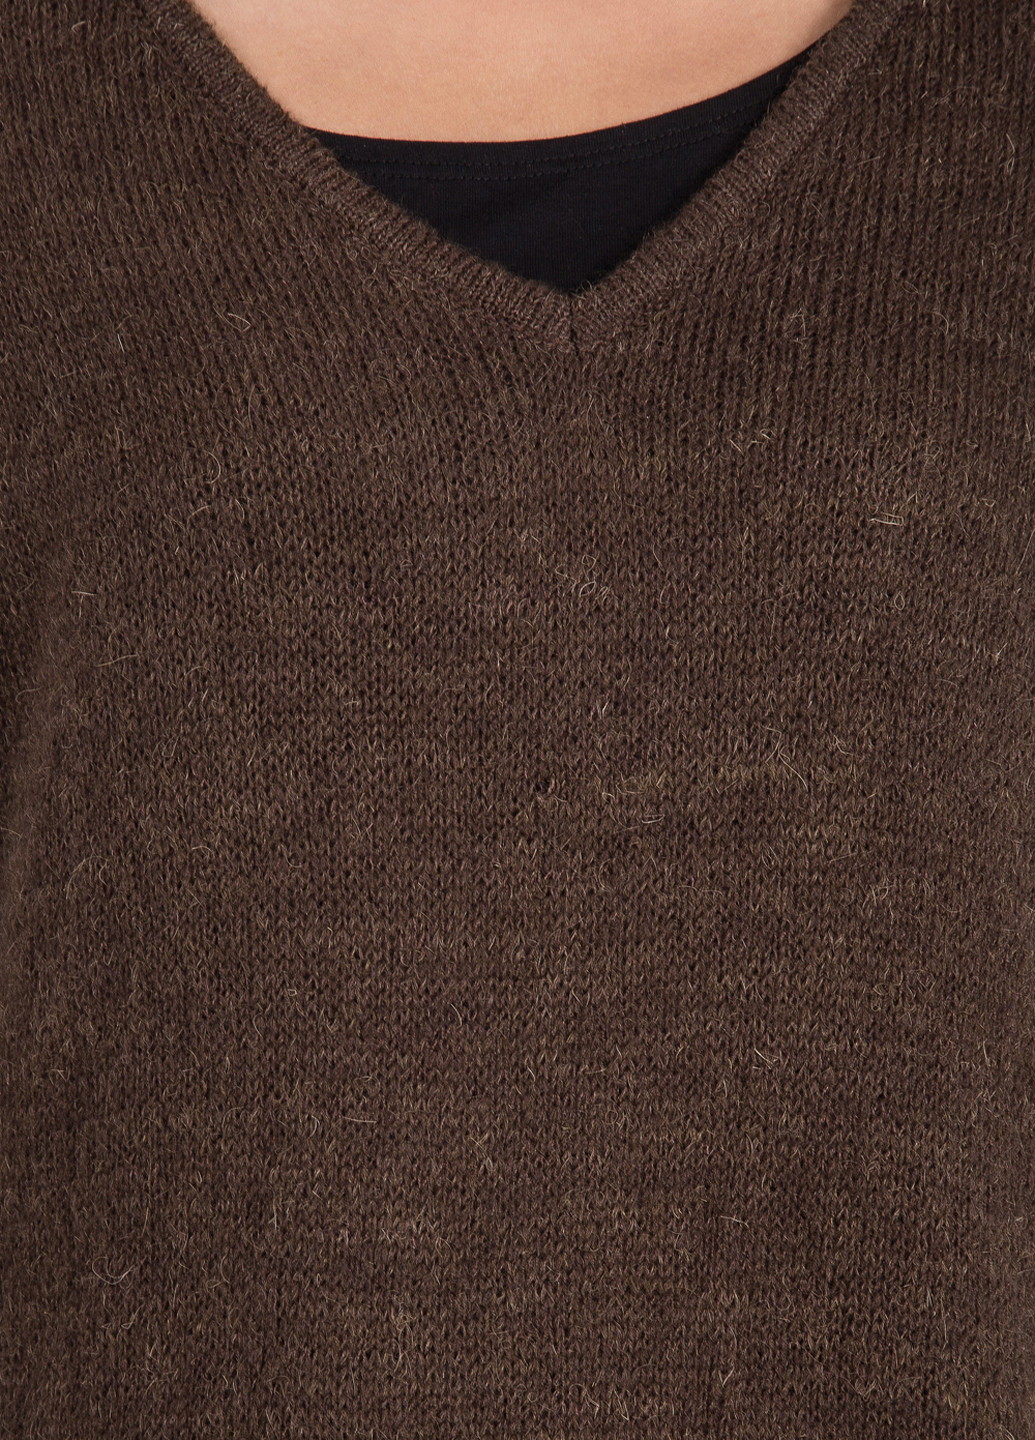 Шоколадный демисезонный пуловер пуловер Triko Bakh